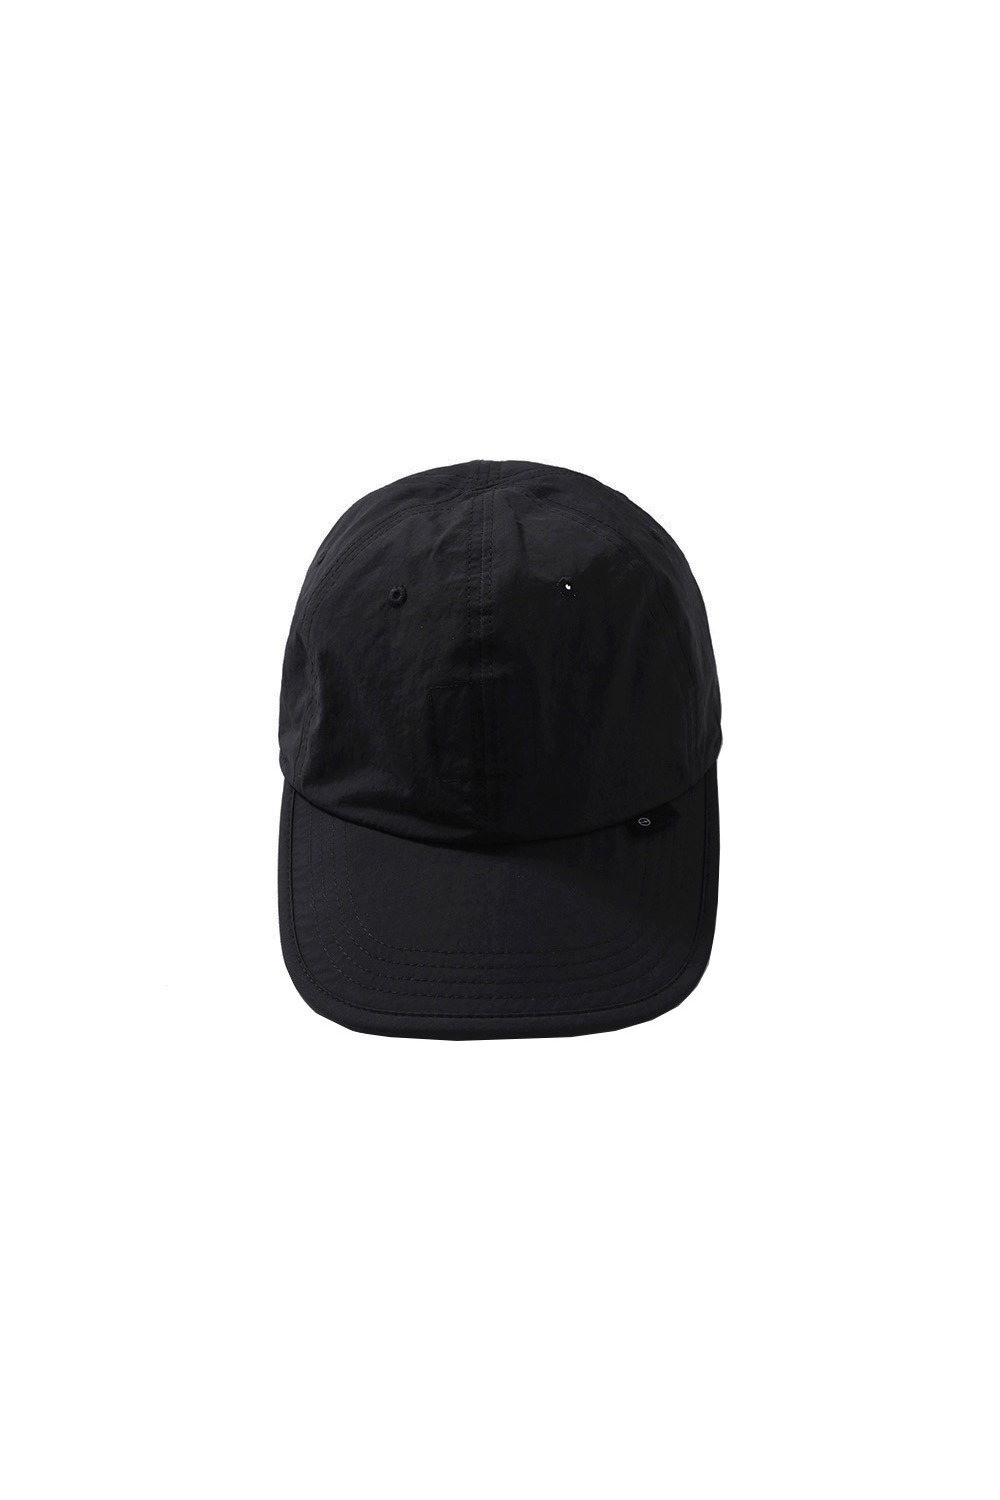 Uniform Cap-Black Nc